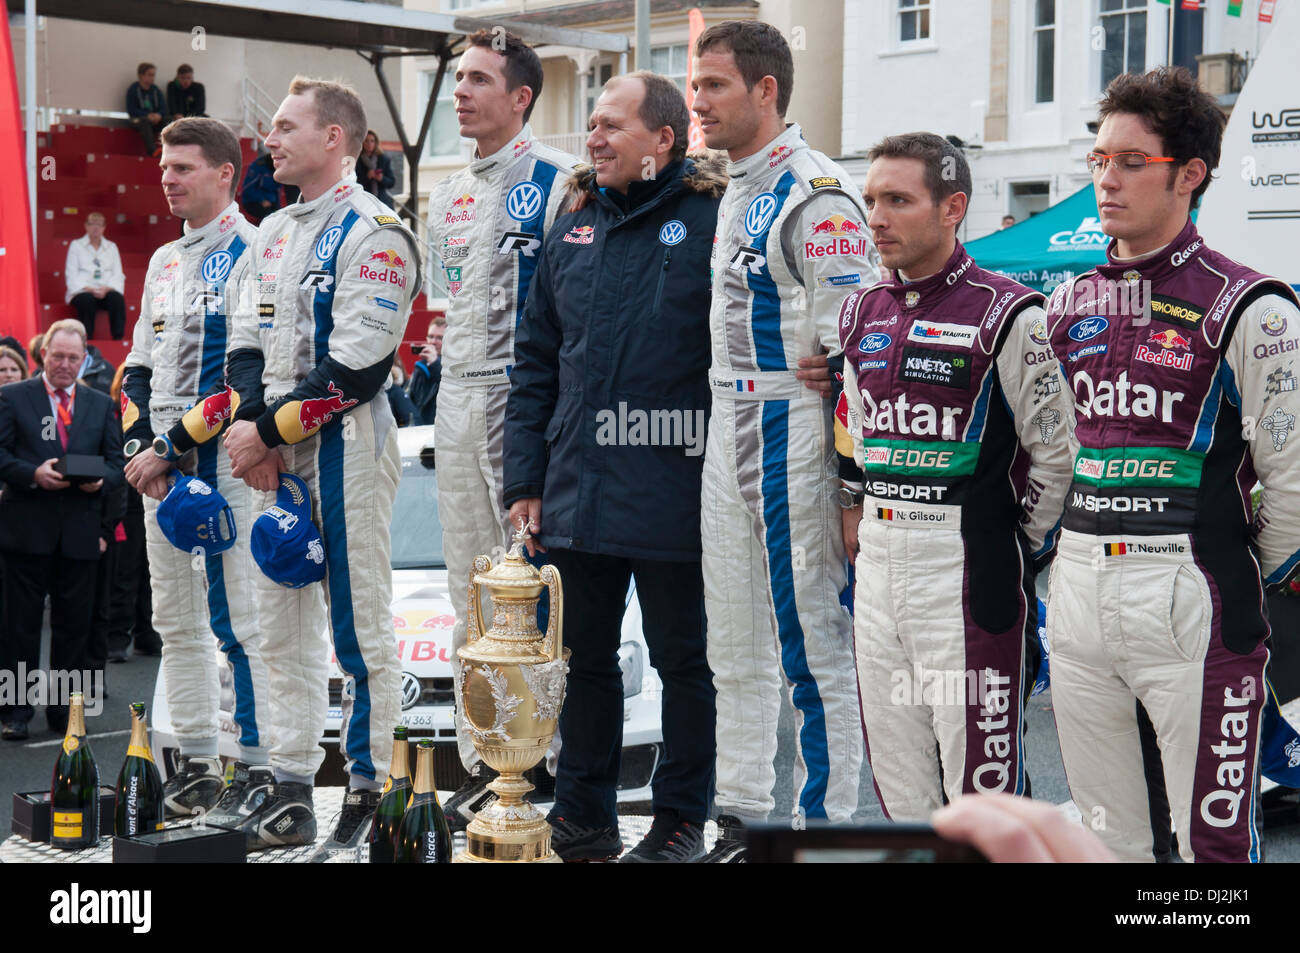 Wales Rally GB 2013 concurrents à la tribune des lauréats du nord du Pays de Galles Llandudno Banque D'Images